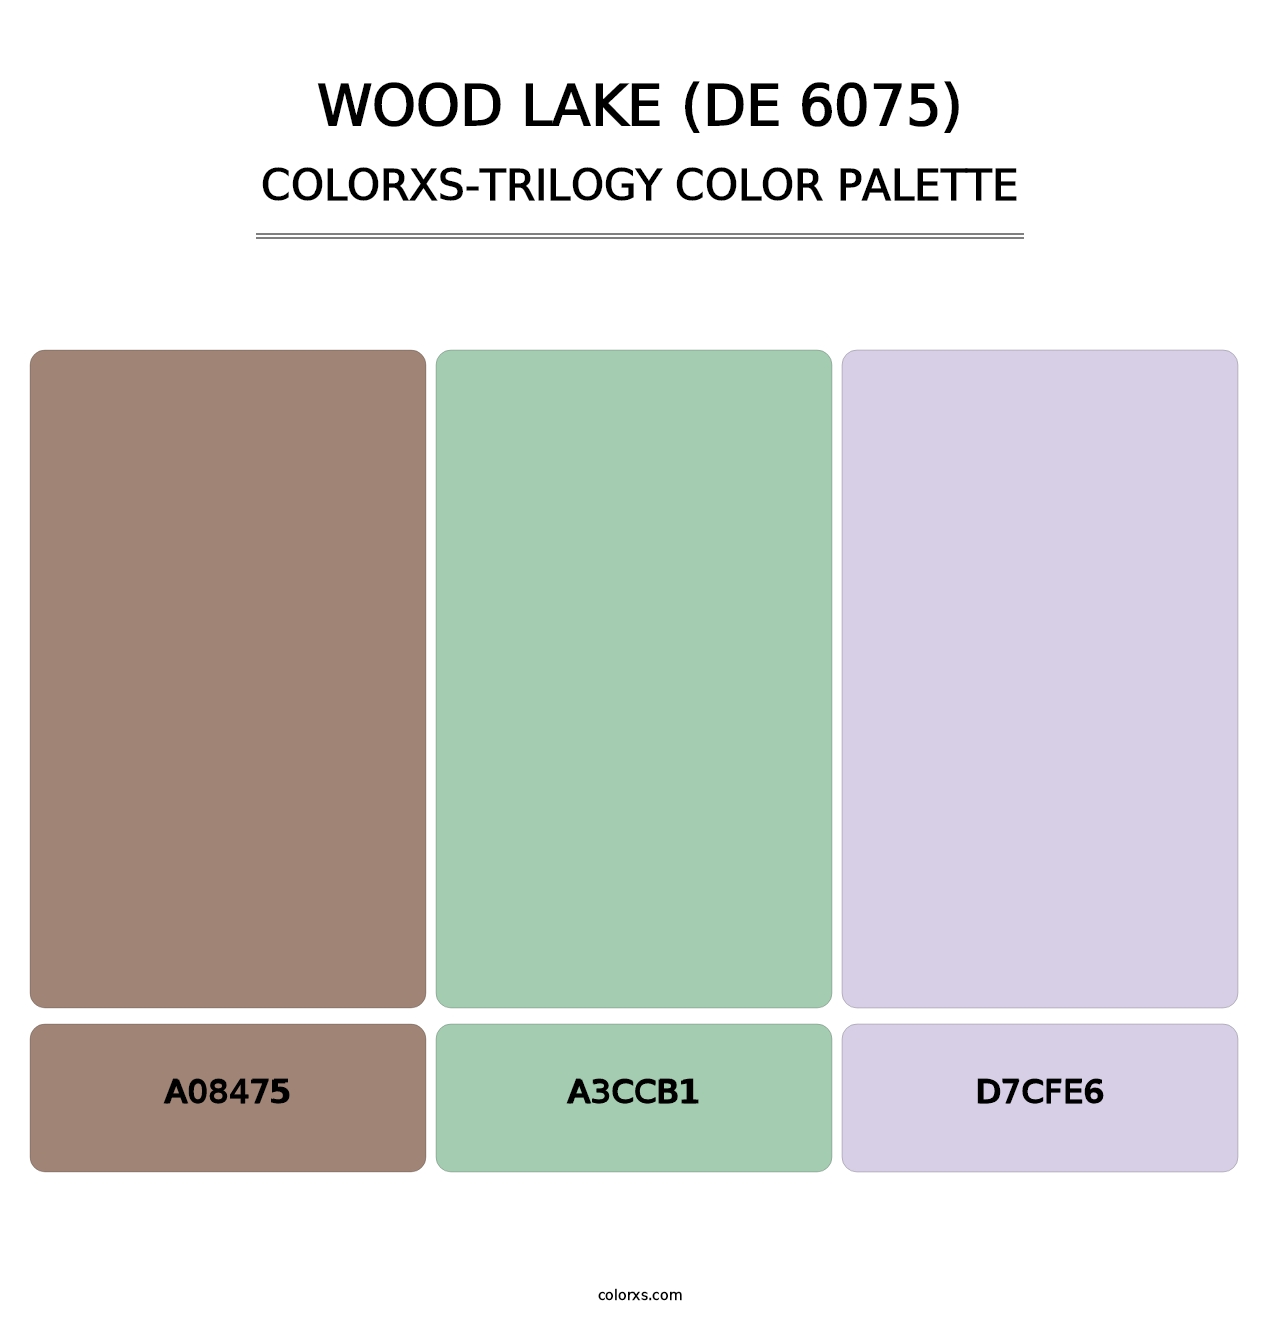 Wood Lake (DE 6075) - Colorxs Trilogy Palette